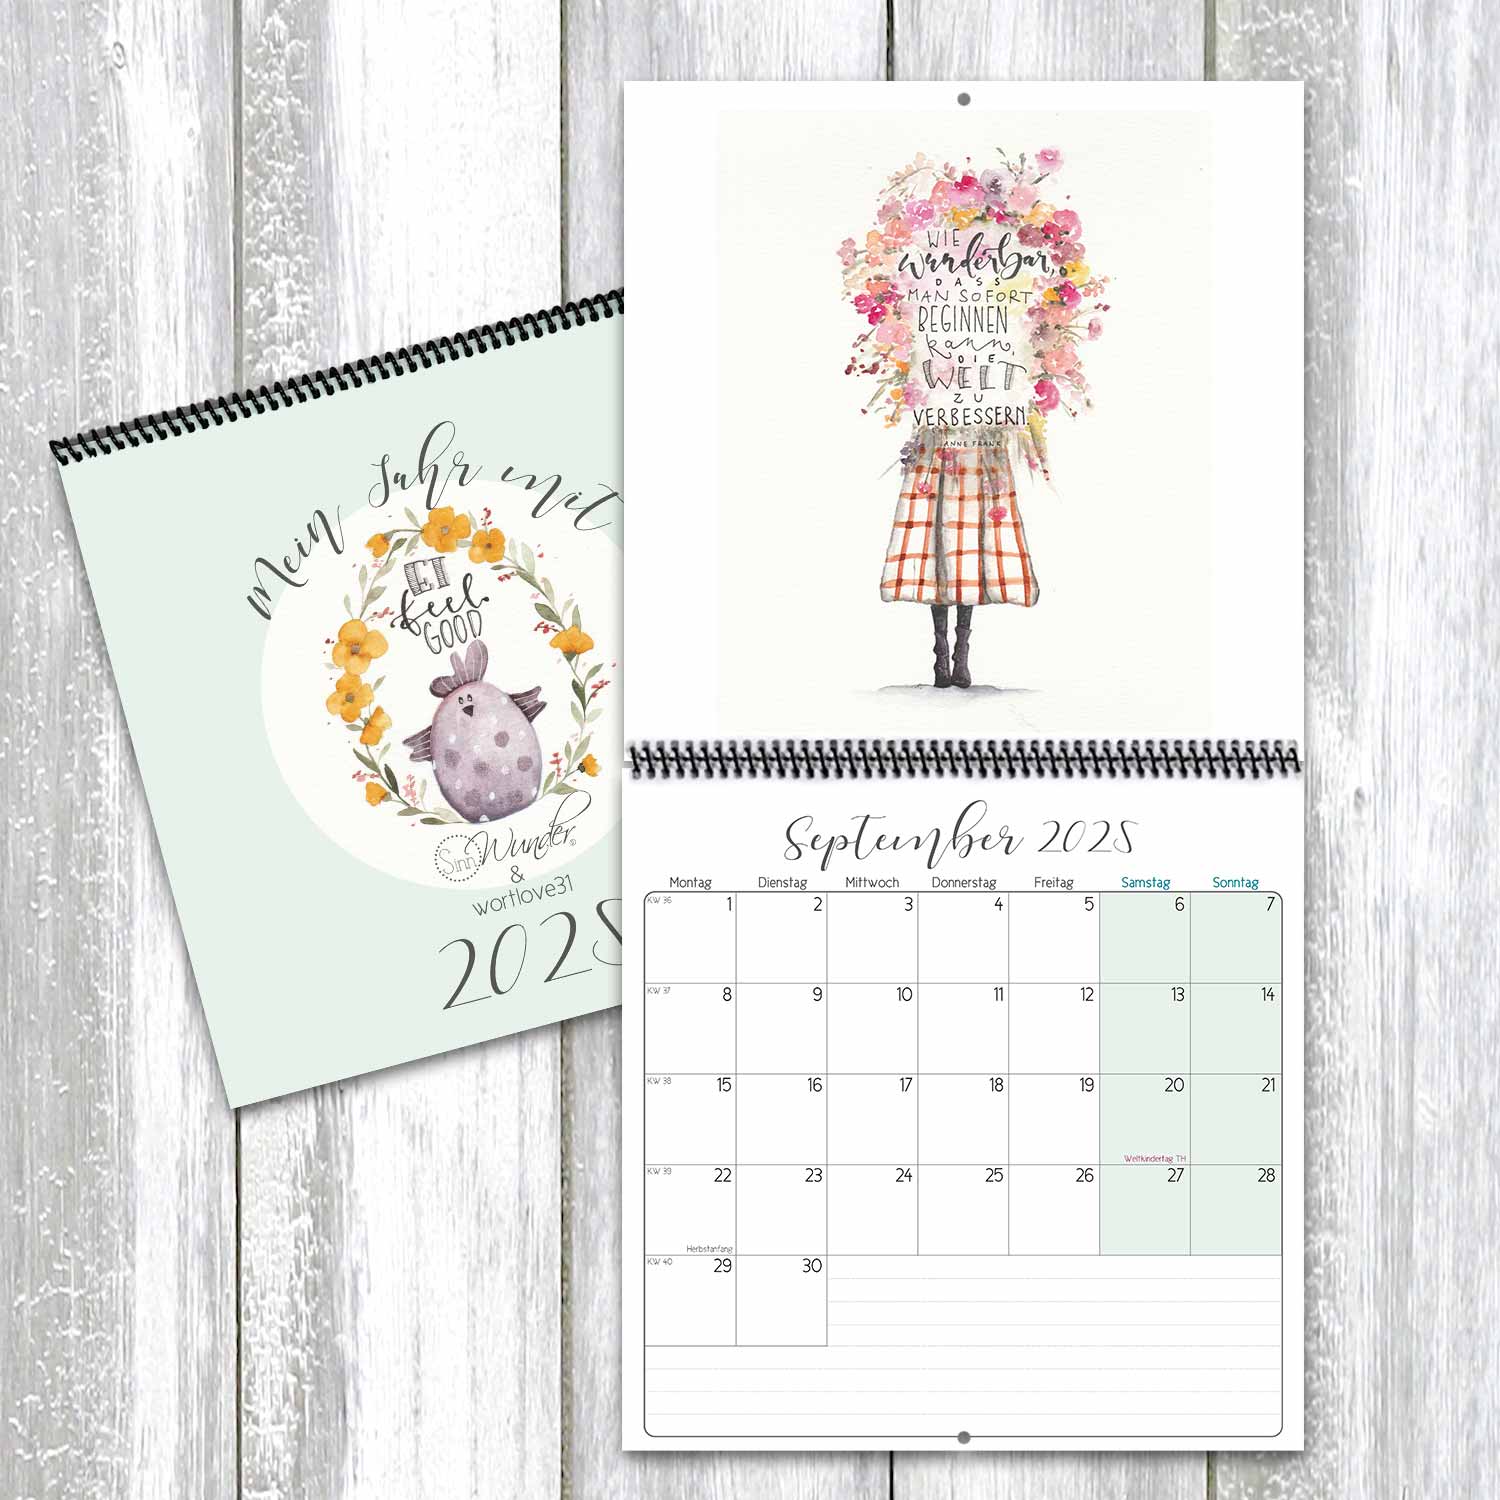 SinnWunder Handlettering Wandkalender, Büro-Kalender oder Küchenkalender mit Aquarellzeichnungen von wortlove31 für das Jahr 2025